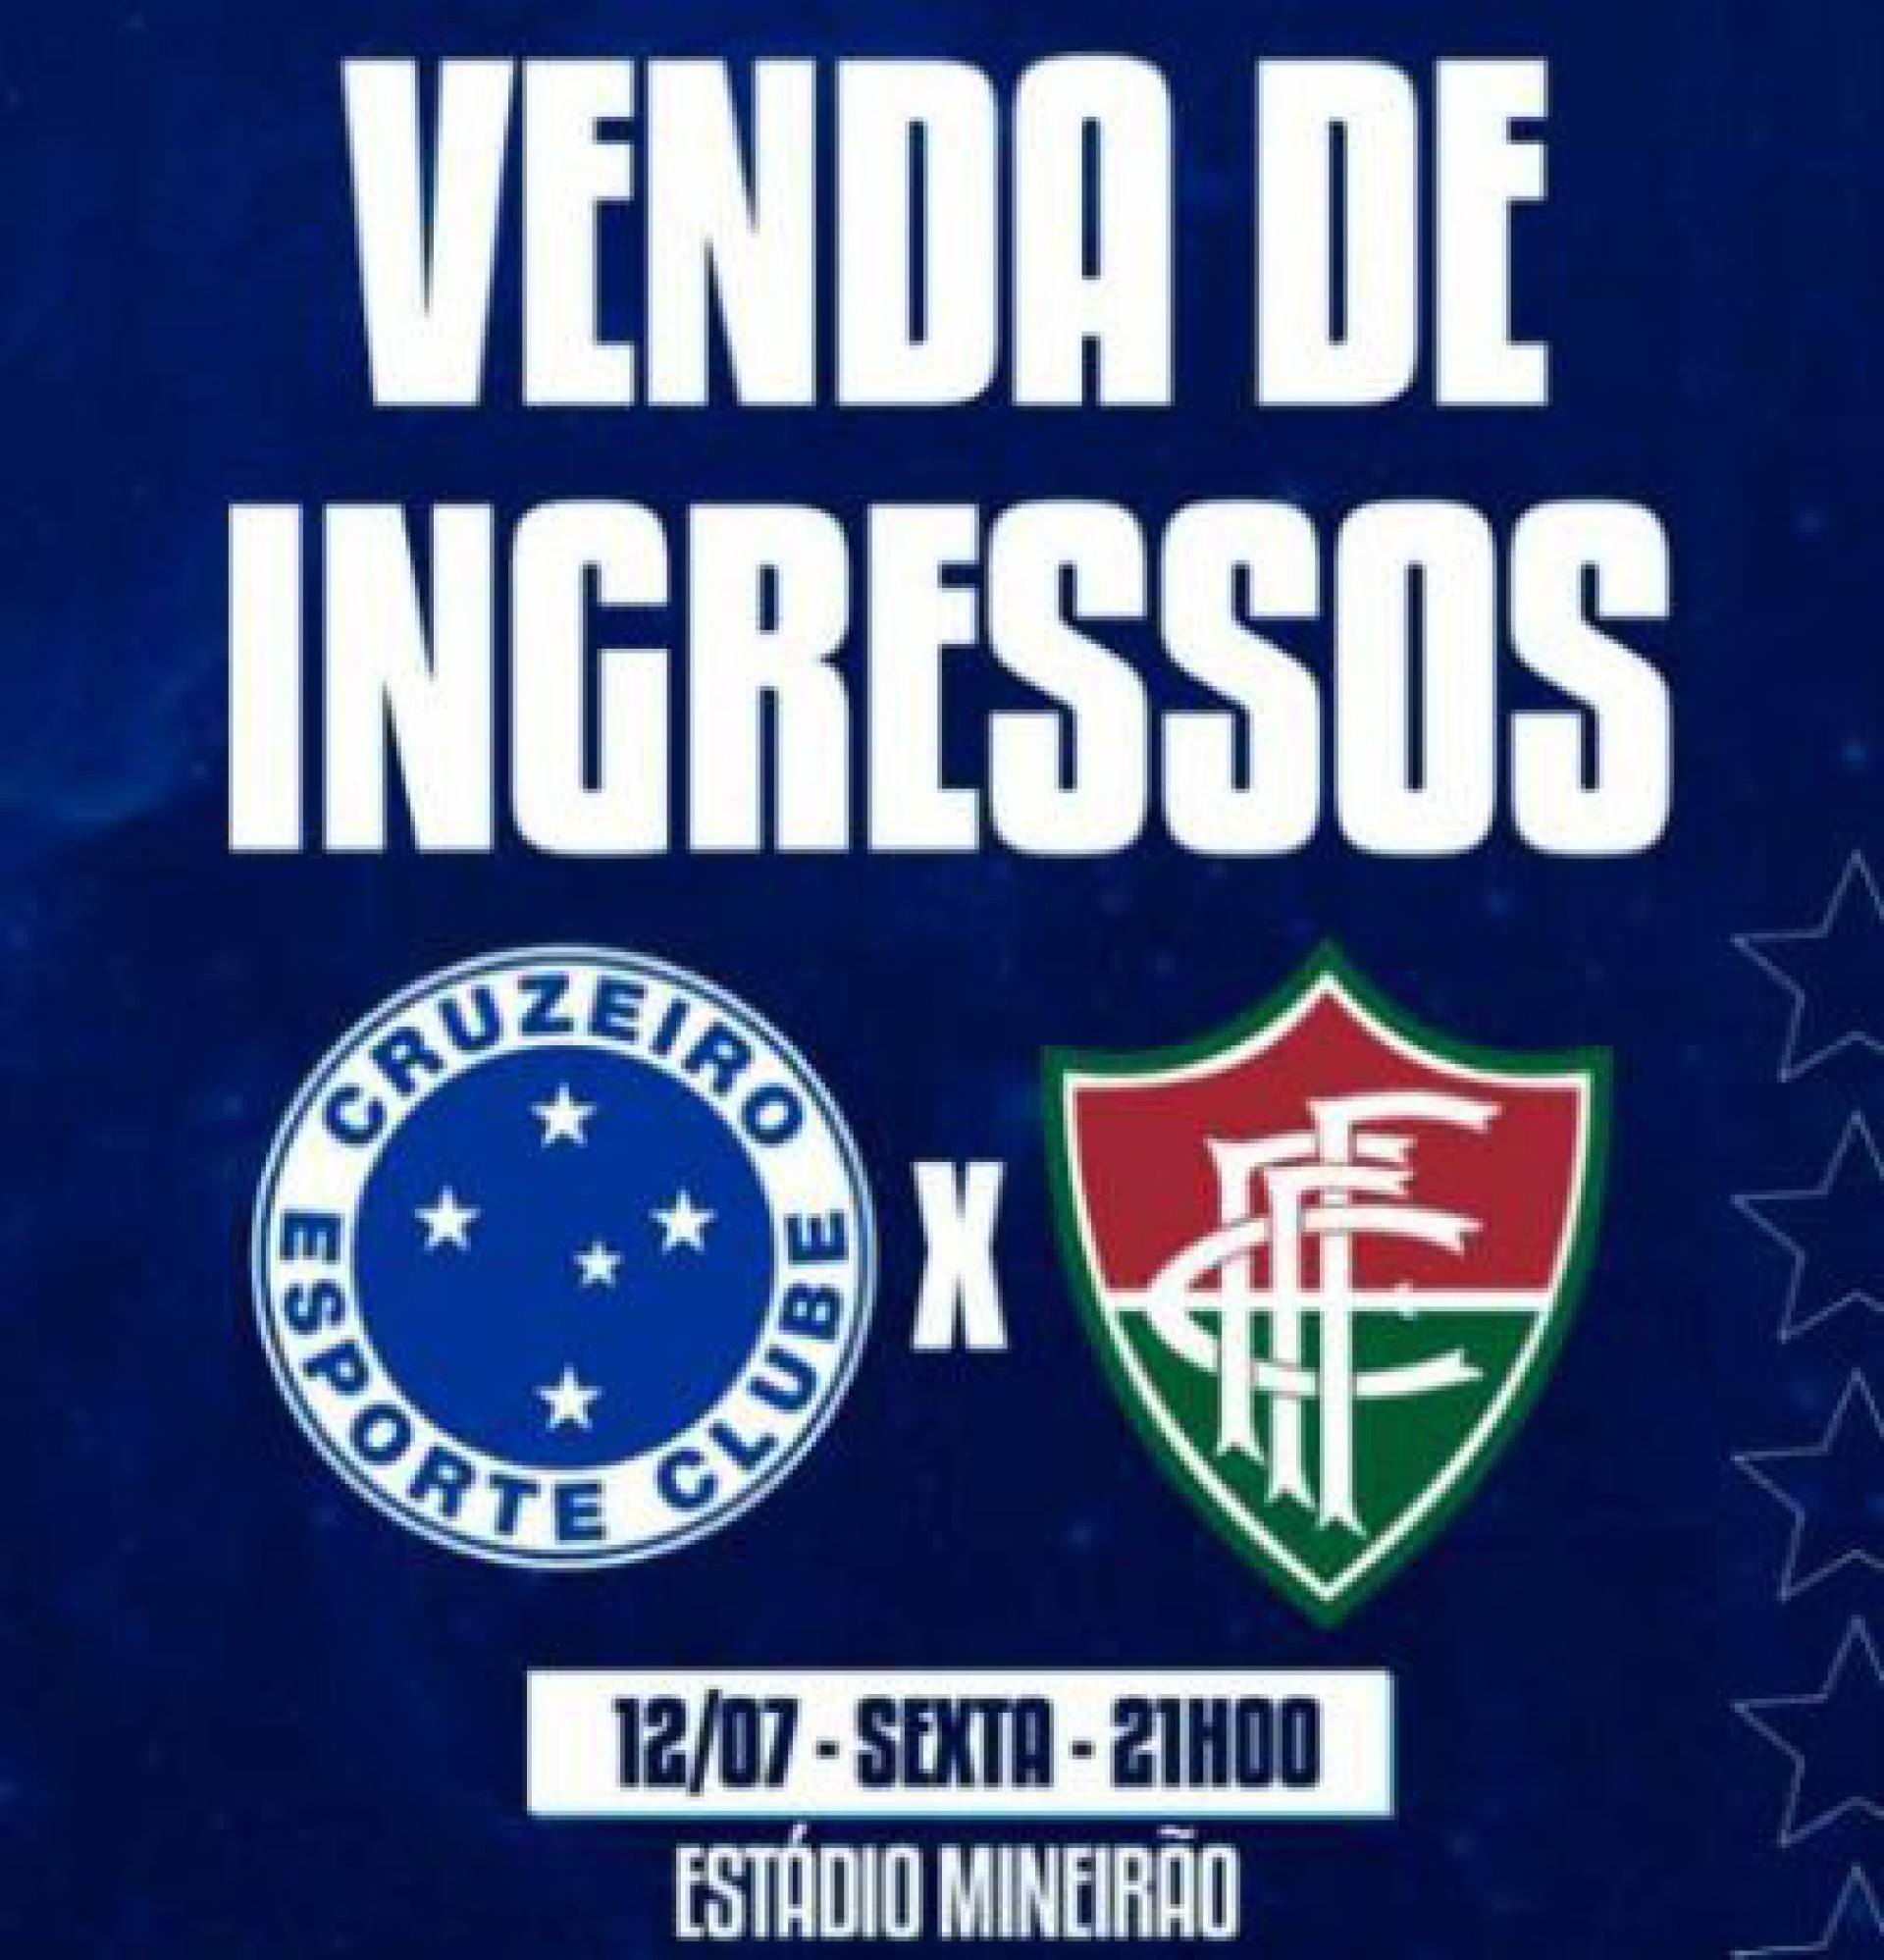 Cruzeiro comete gafe, troca o escudo do Fluminense e erra a data da partida - Reprodução/Twitter Cruzeiro